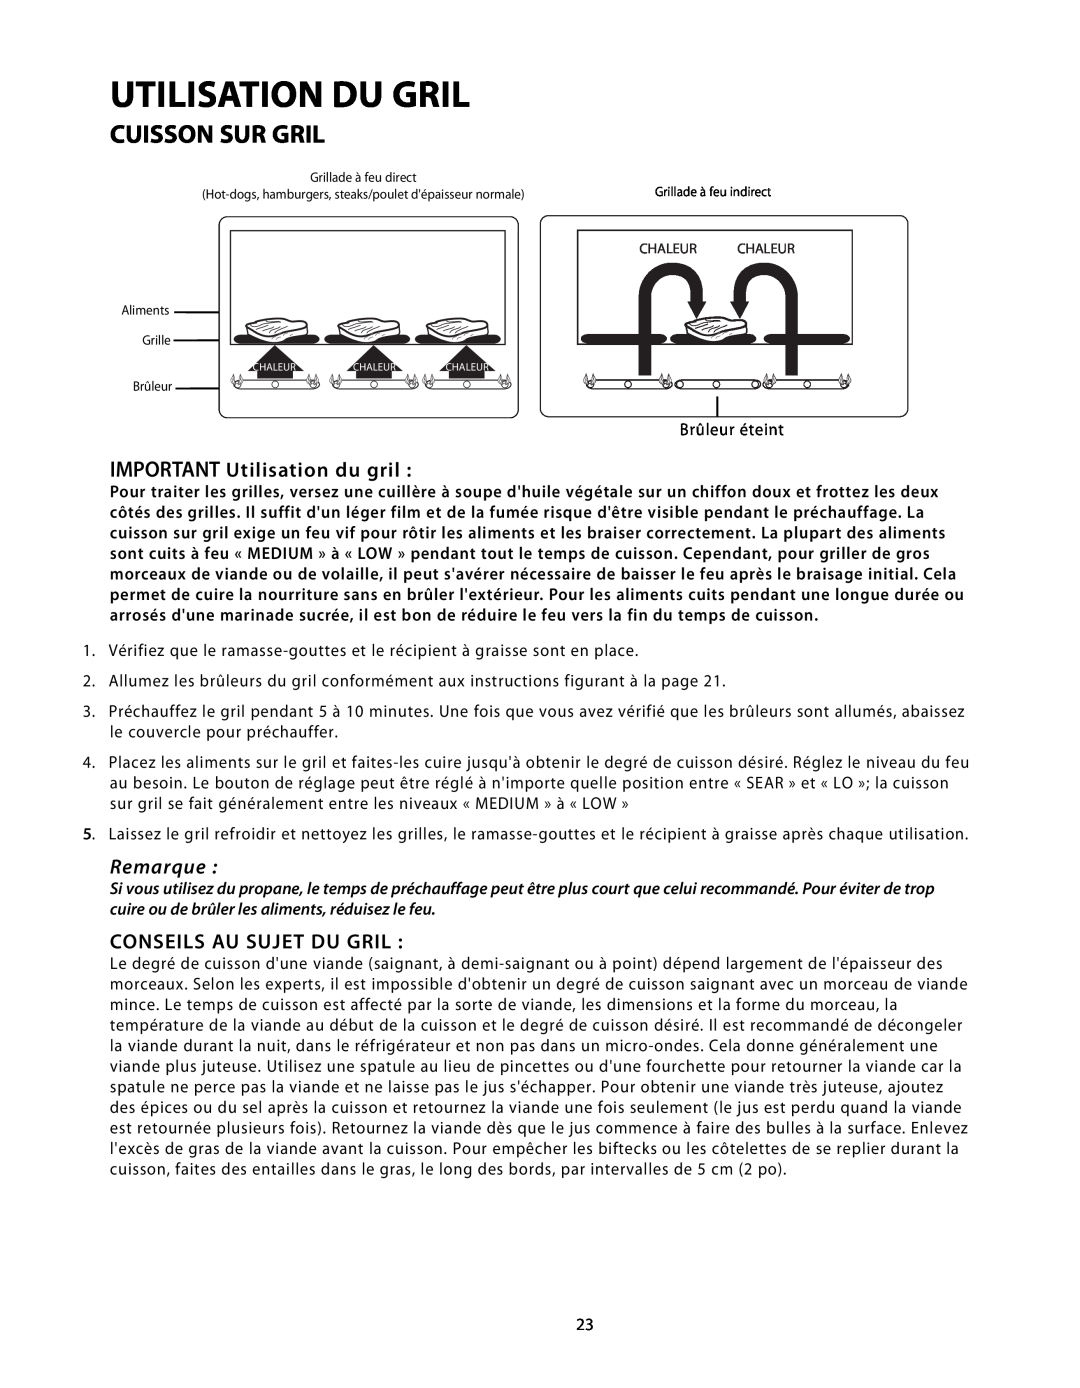 DCS BGB48-BQR Cuisson Sur Gril, IMPORTANT Utilisation du gril, Conseils Au Sujet Du Gril, Utilisation Du Gril, Remarque 